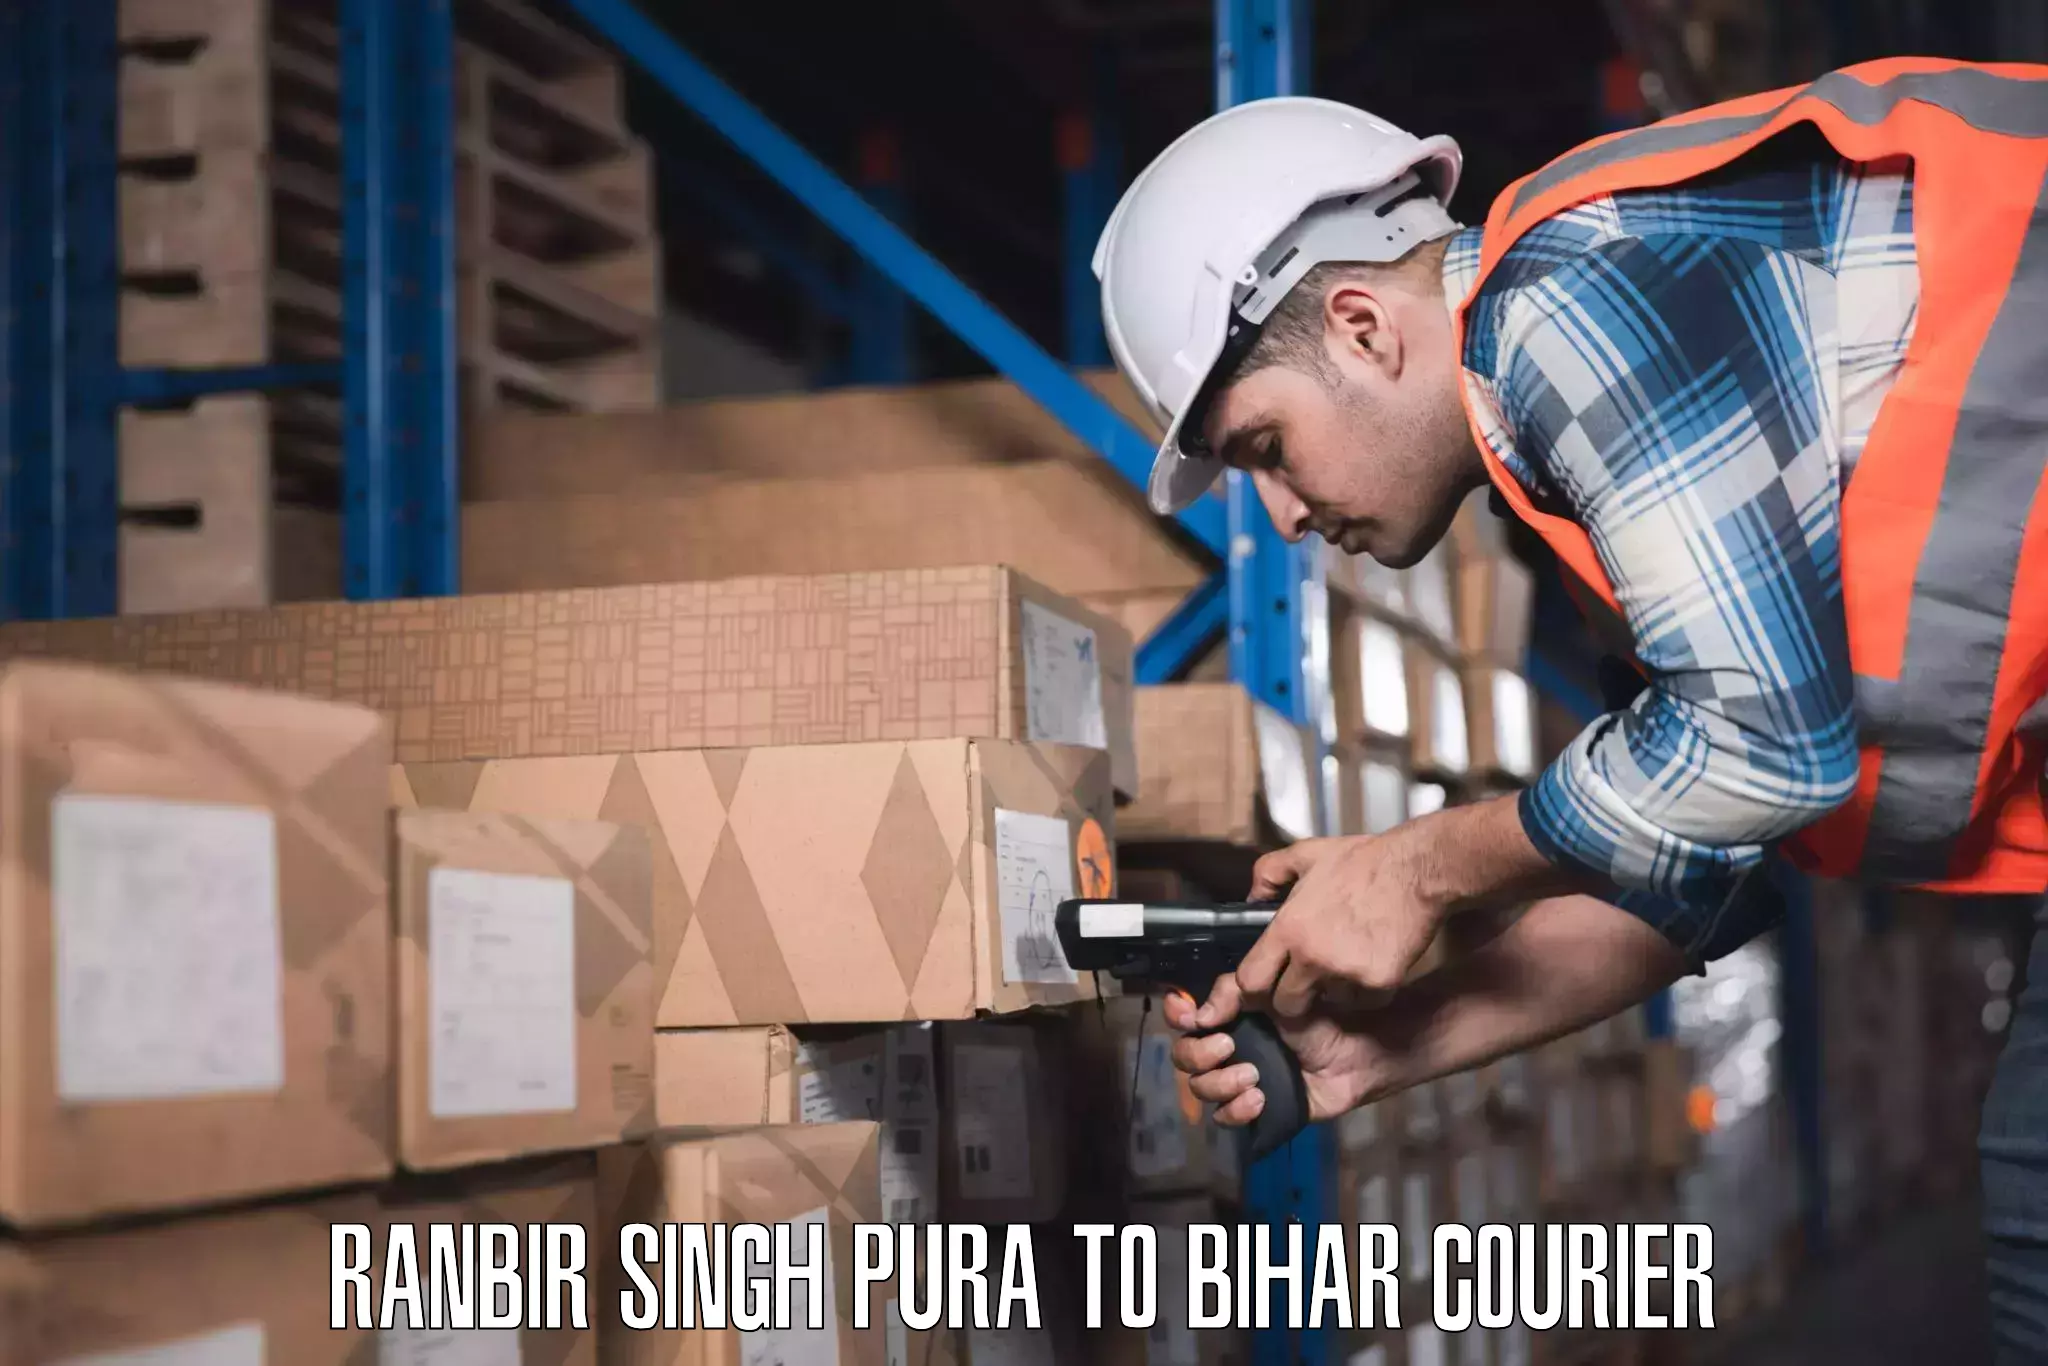 Luggage shipping planner Ranbir Singh Pura to Maharajganj Vaishali